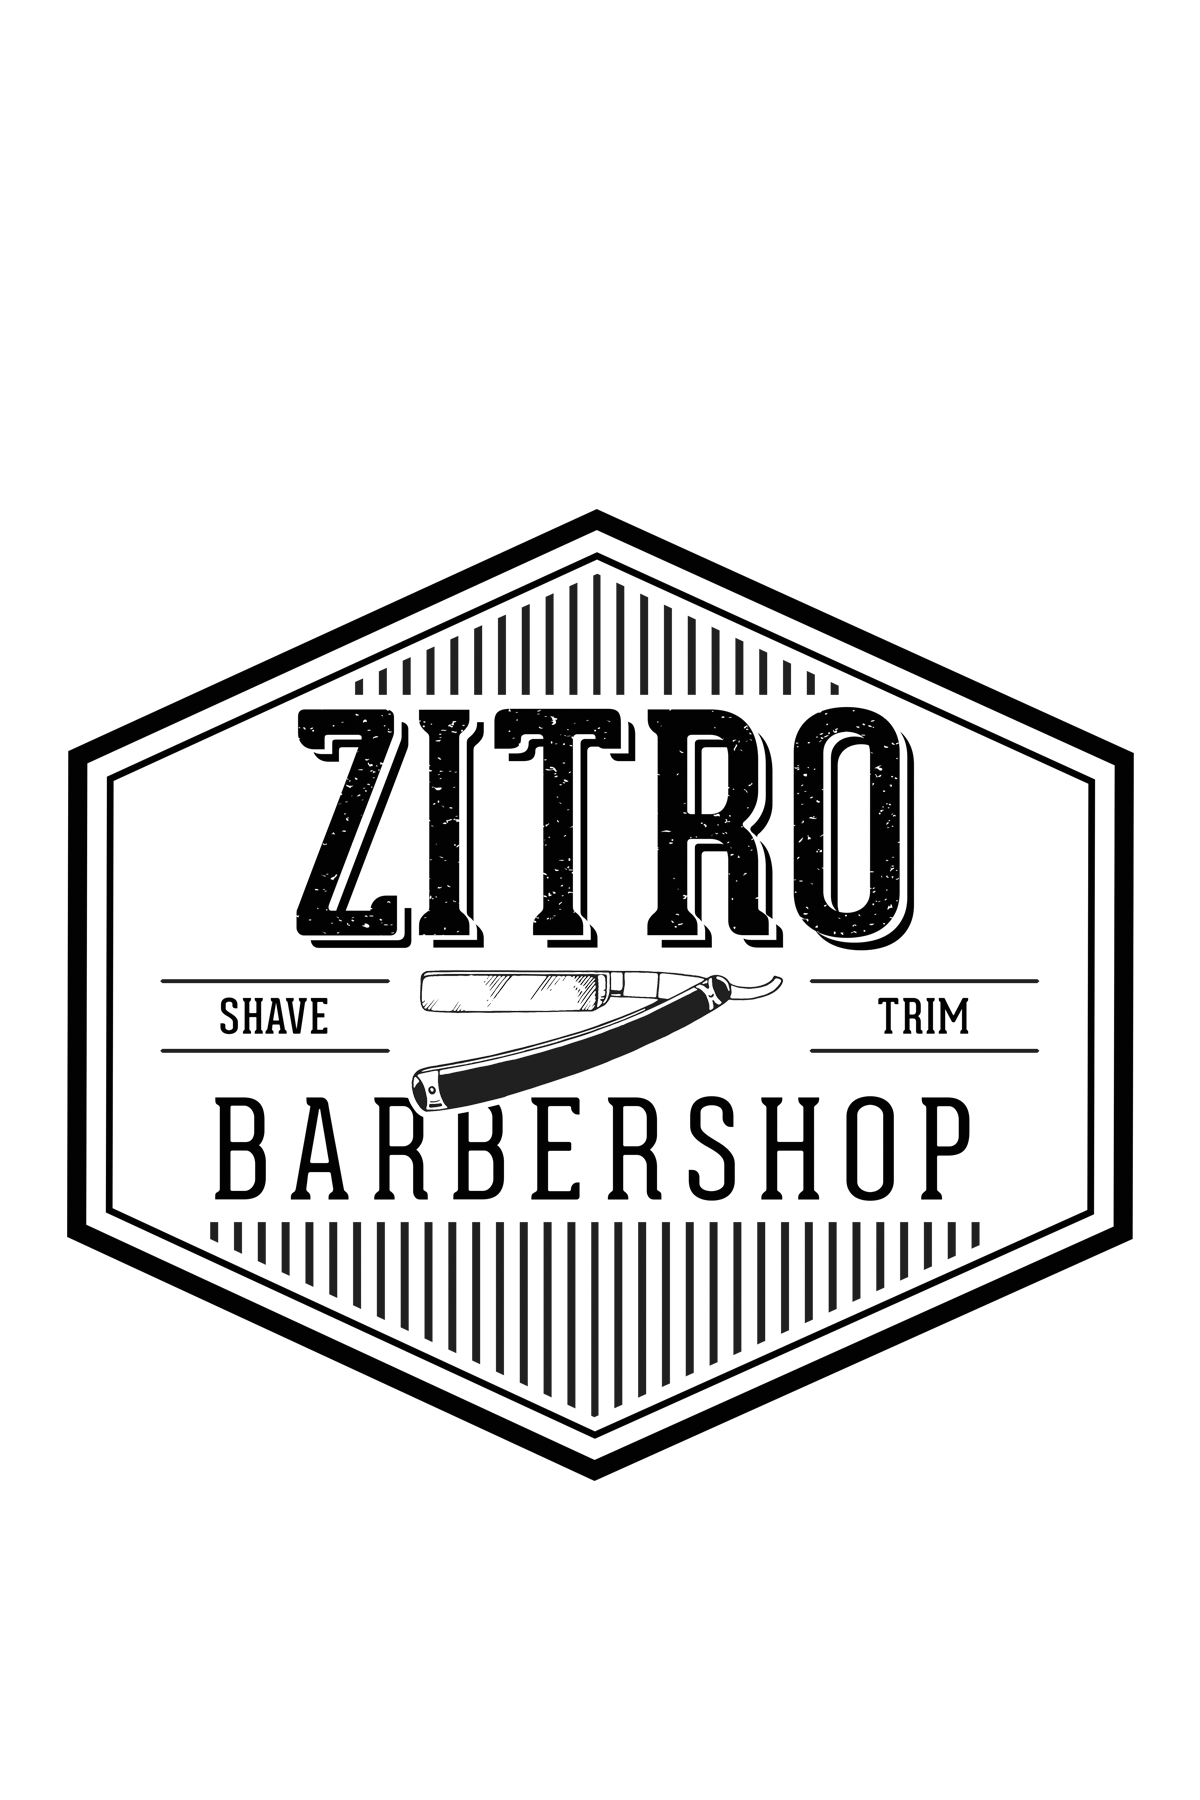 Zitro Barbershop